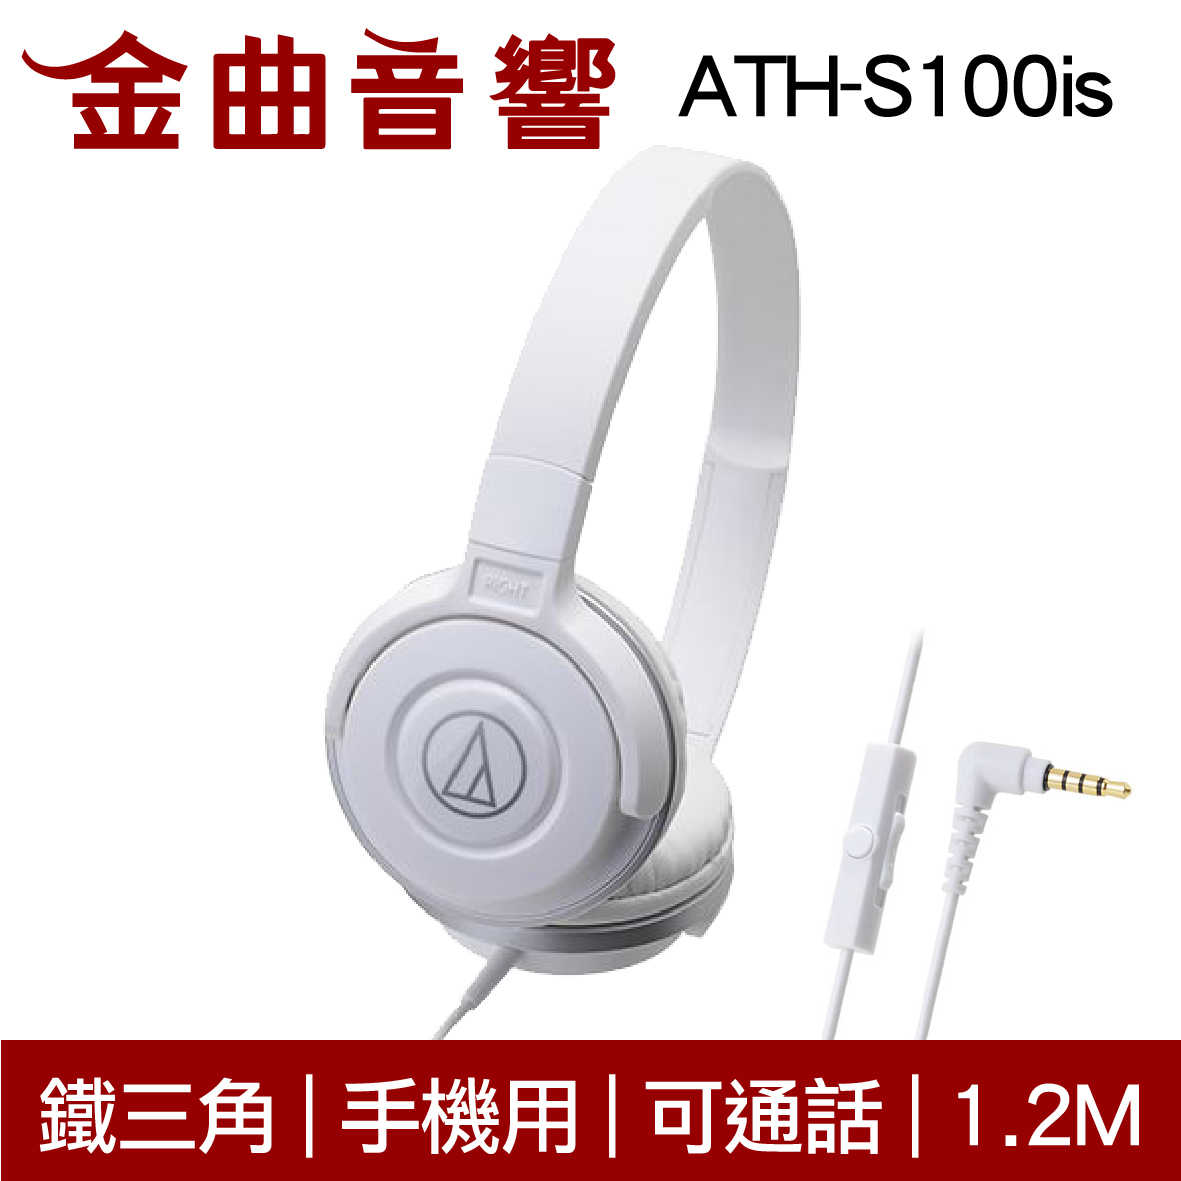 鐵三角 ATH-S100is 黑粉色 兒童耳機 大人 皆適用 耳罩式 有麥克風版 IOS/安卓適用 | 金曲音響